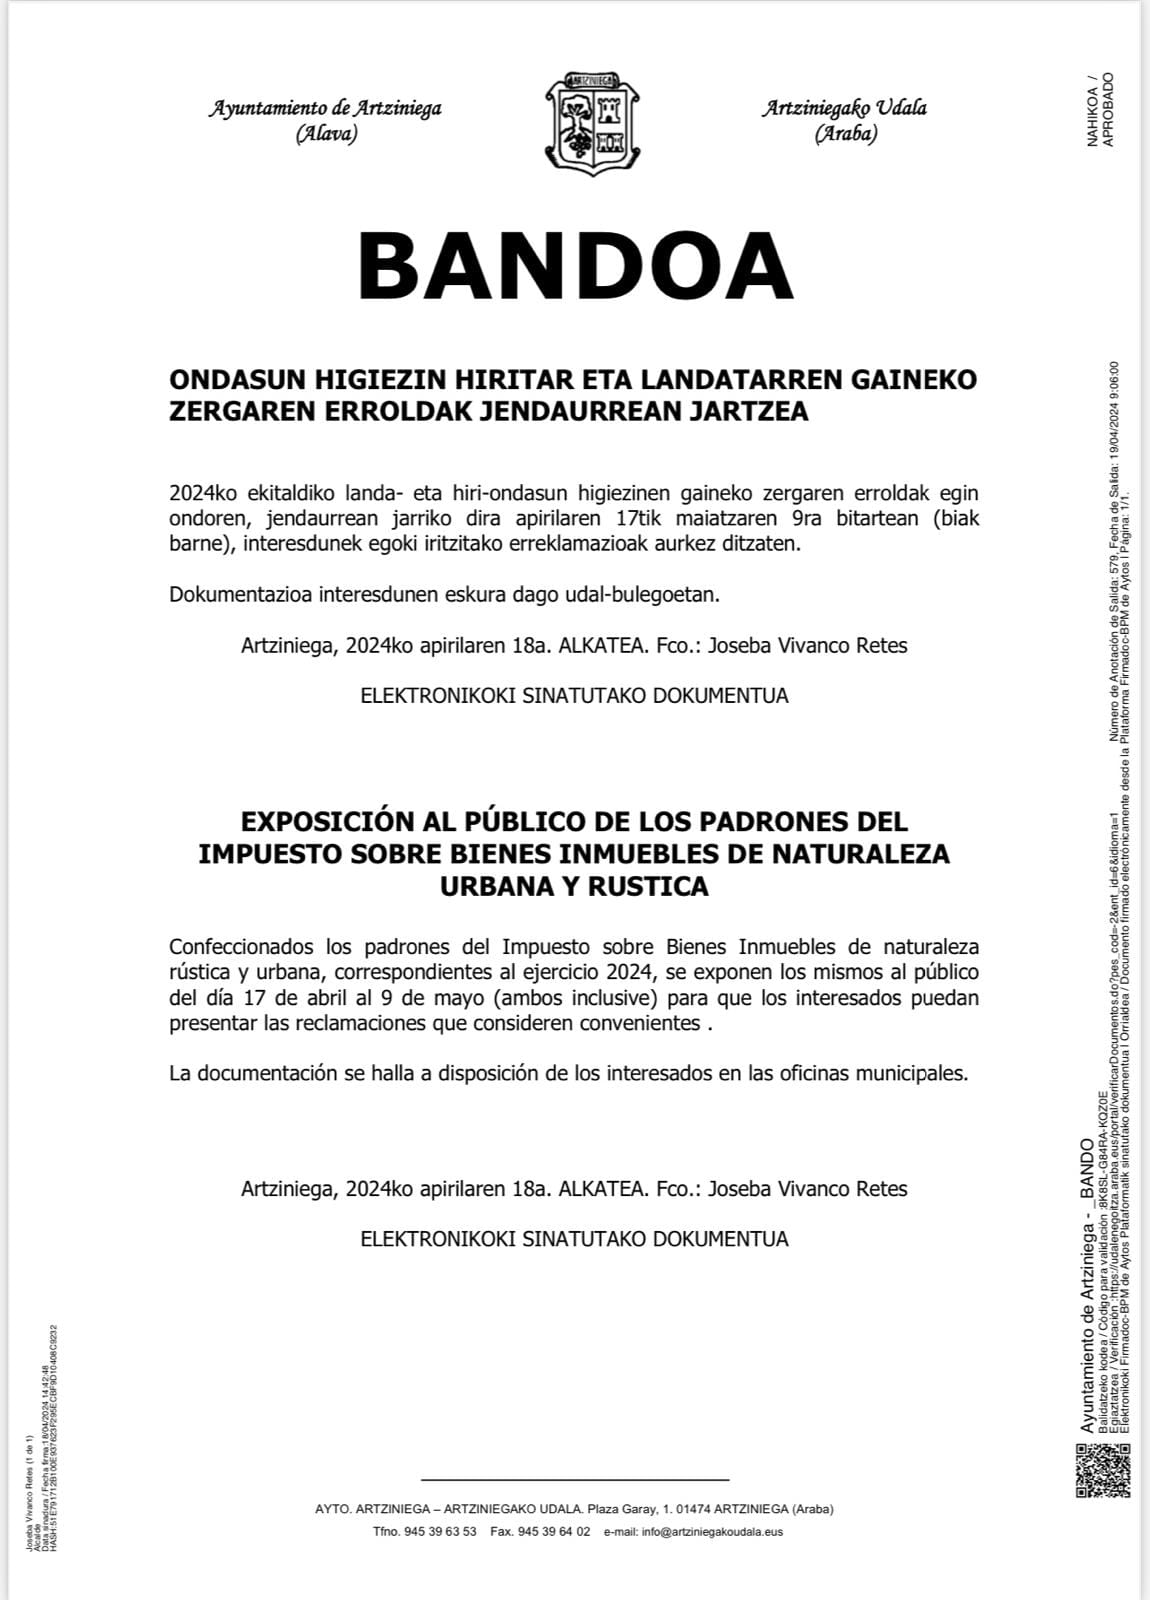 BANDO: EXPOSICIÓN AL PÚBLICO DE LOS PADRONES DEL IMPUESTO SOBRE BIENES INMUEBLES DE NATURALEZA URBANA Y RÚSTICA